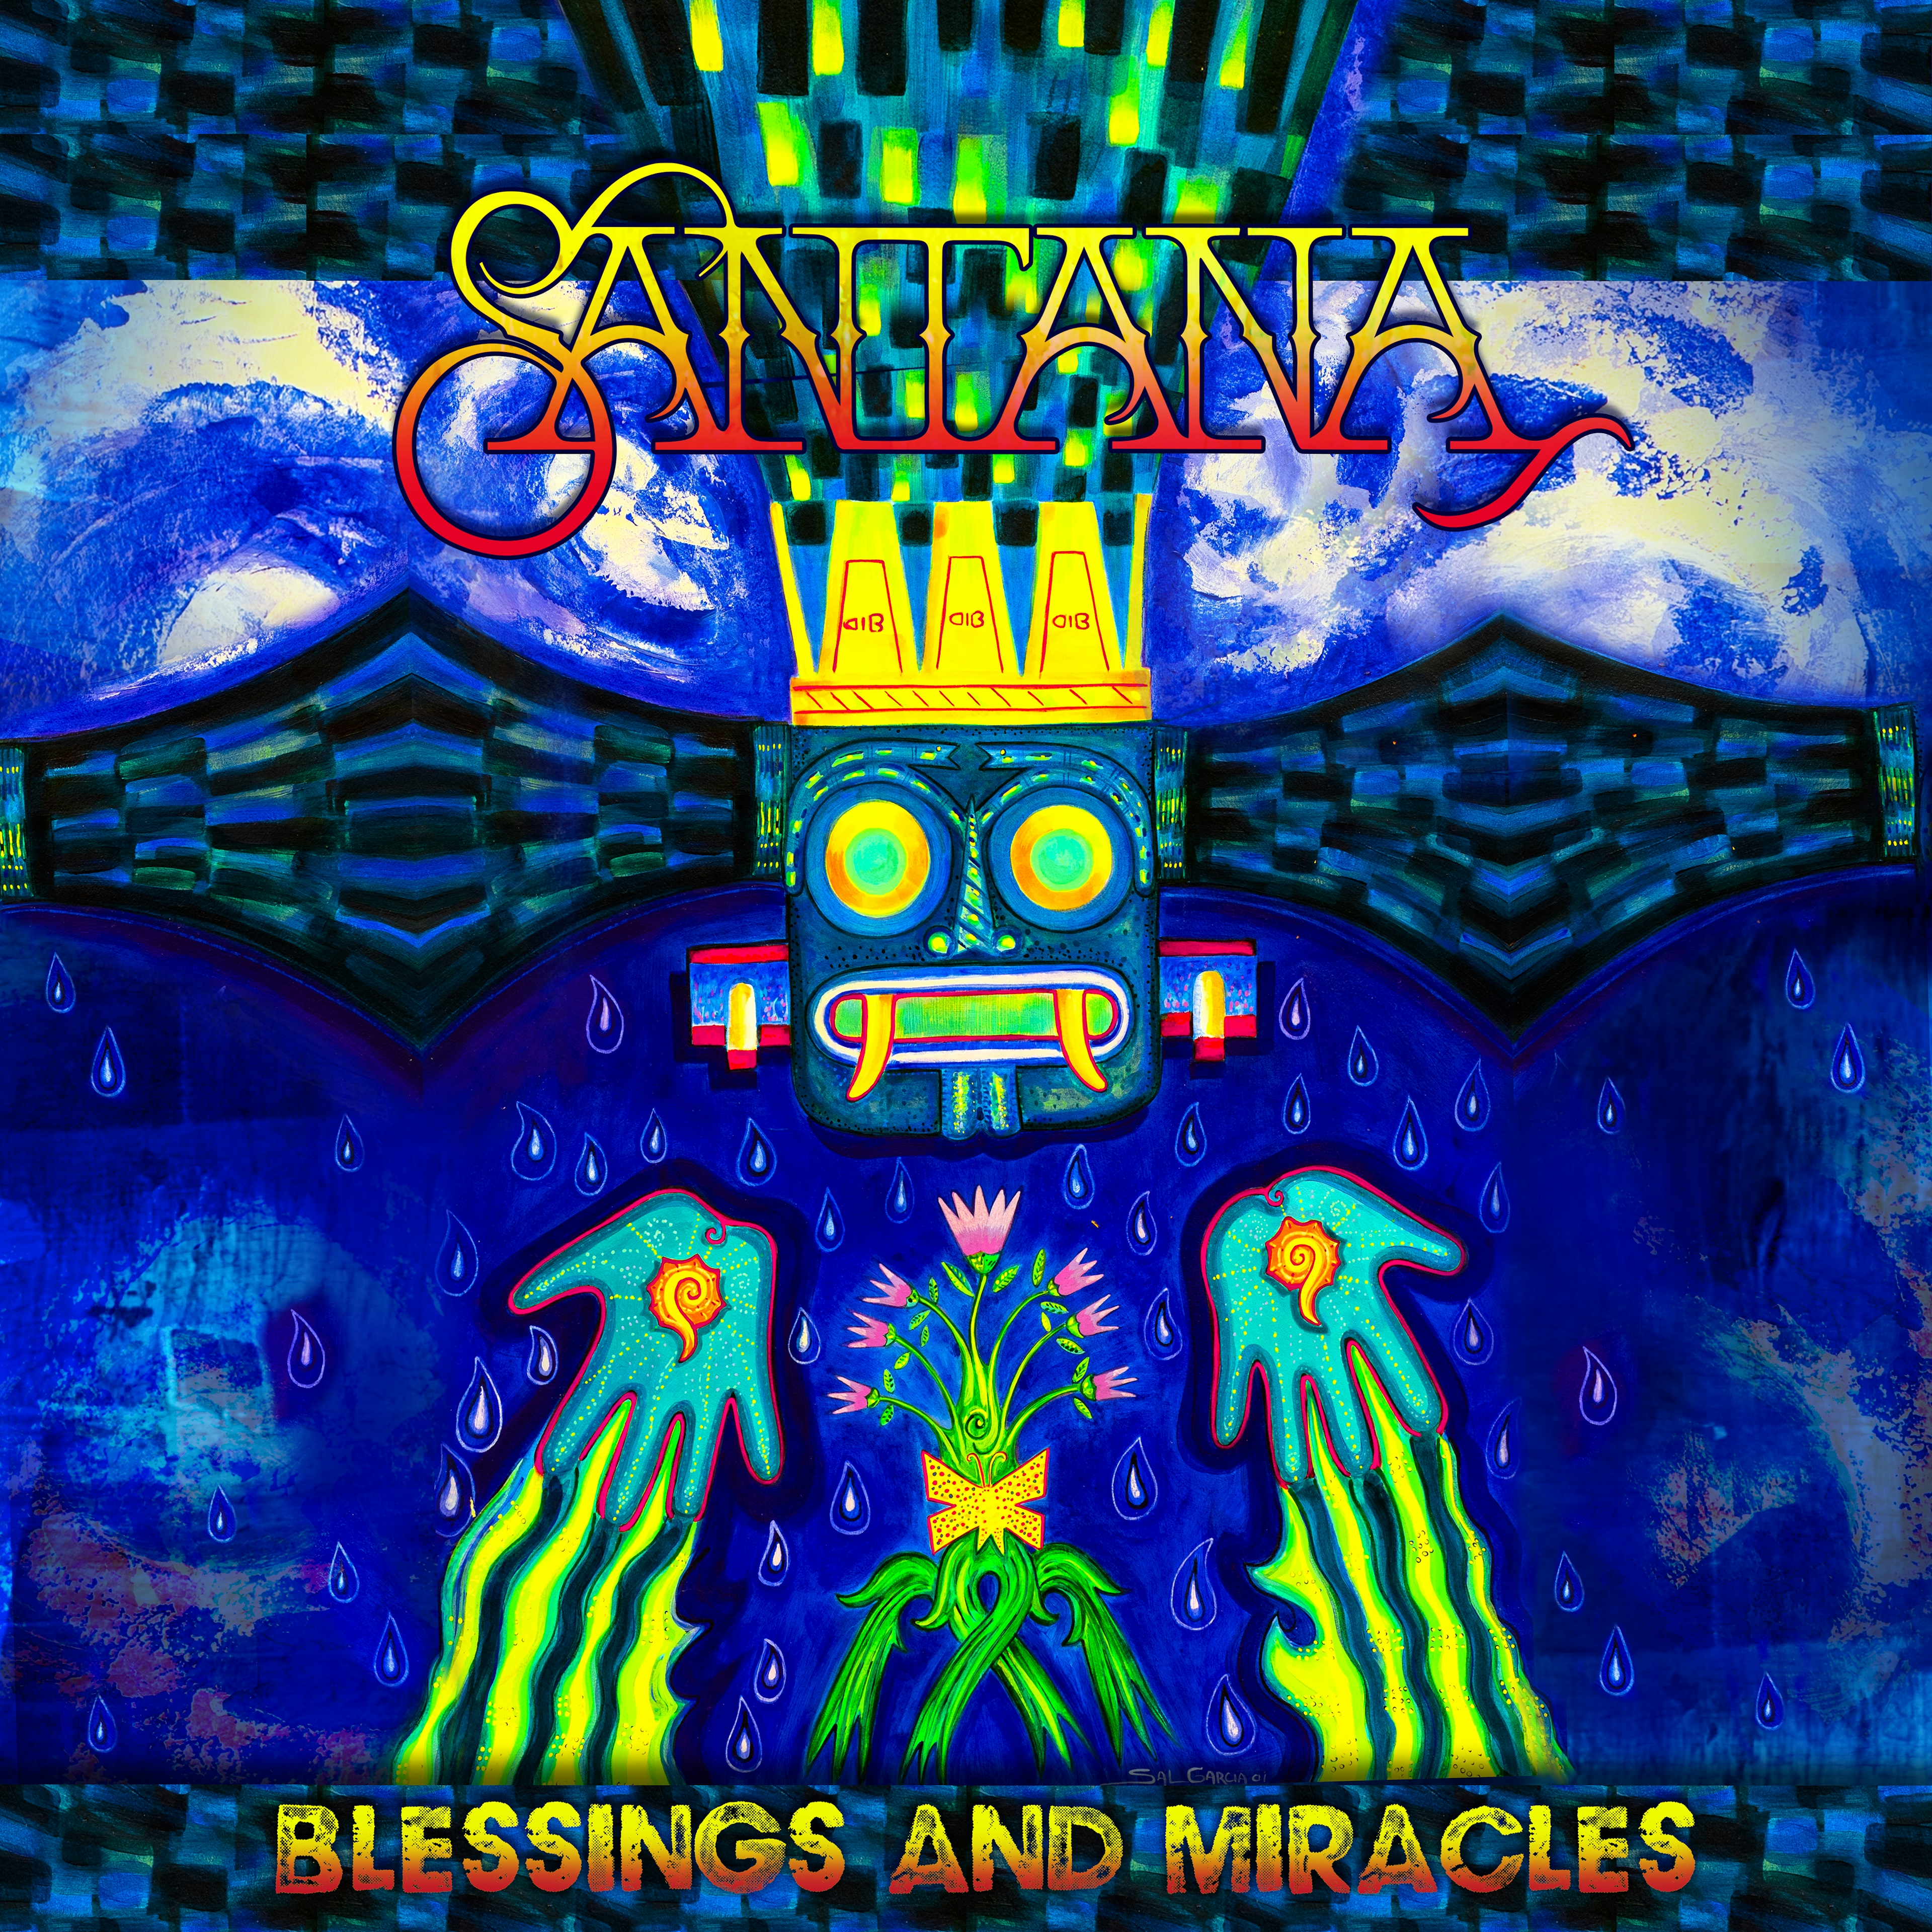 Album artwork for Album artwork for Blessings and Miracles by Santana by Blessings and Miracles - Santana